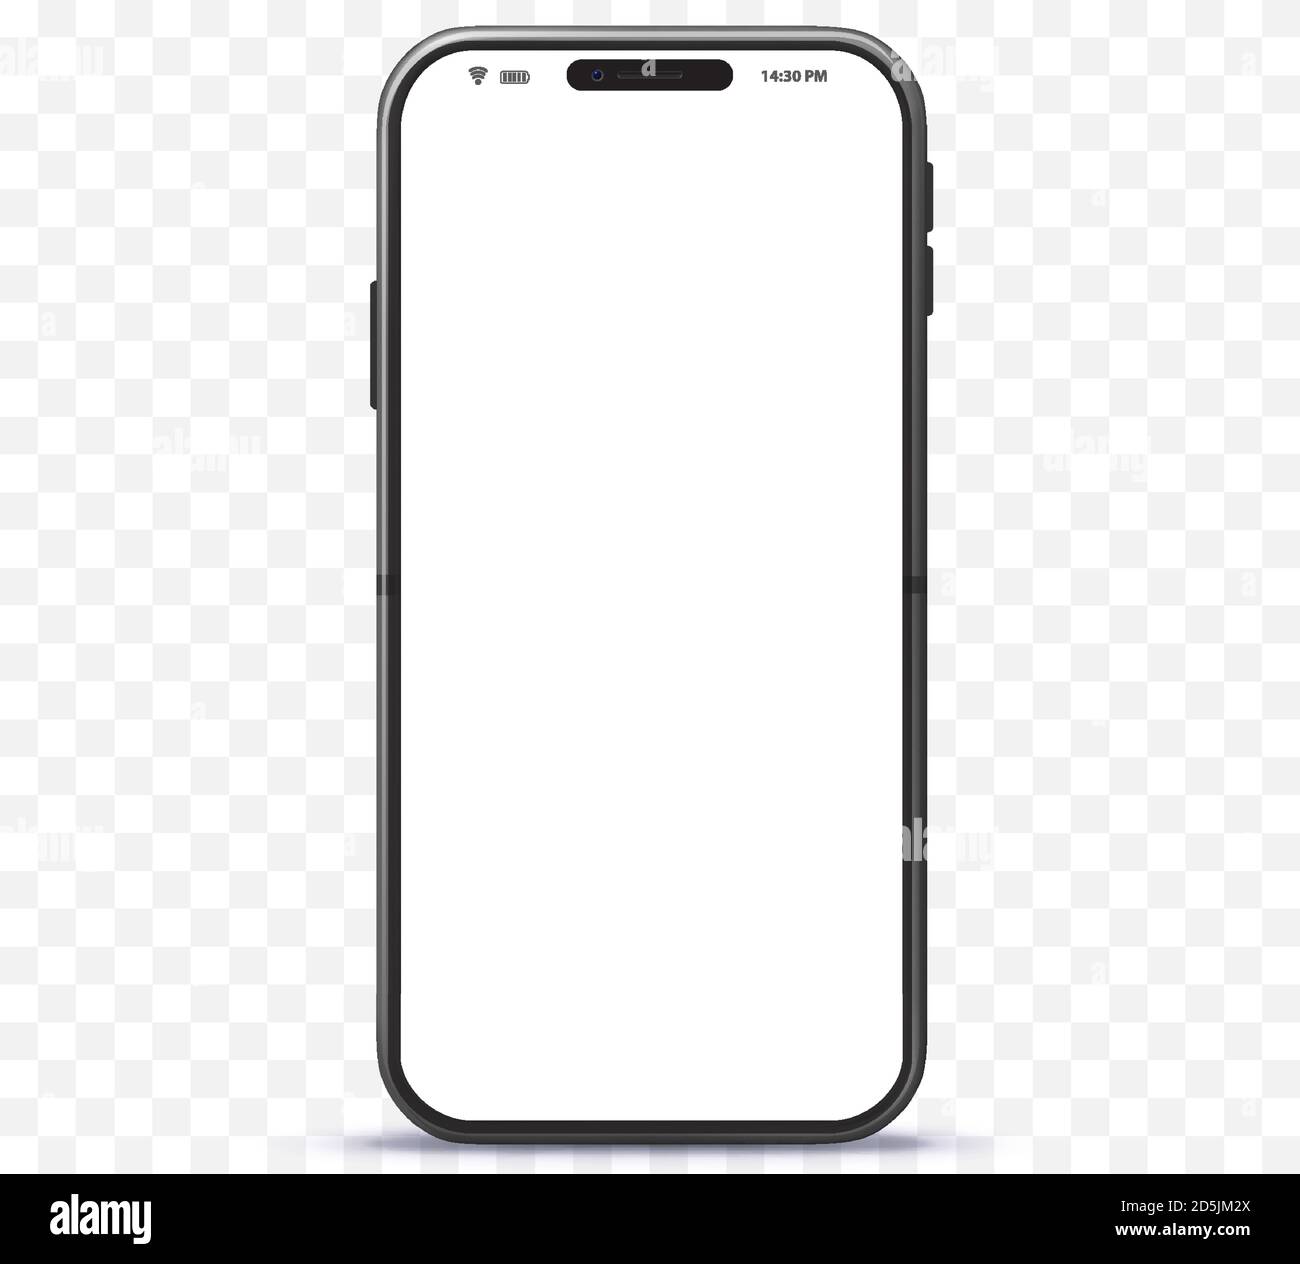 Telefono cellulare iPhone Style color argento. Mockup vettoriale per smartphone con schermo bianco senza cornice. Isolato su sfondo trasparente. Illustrazione Vettoriale